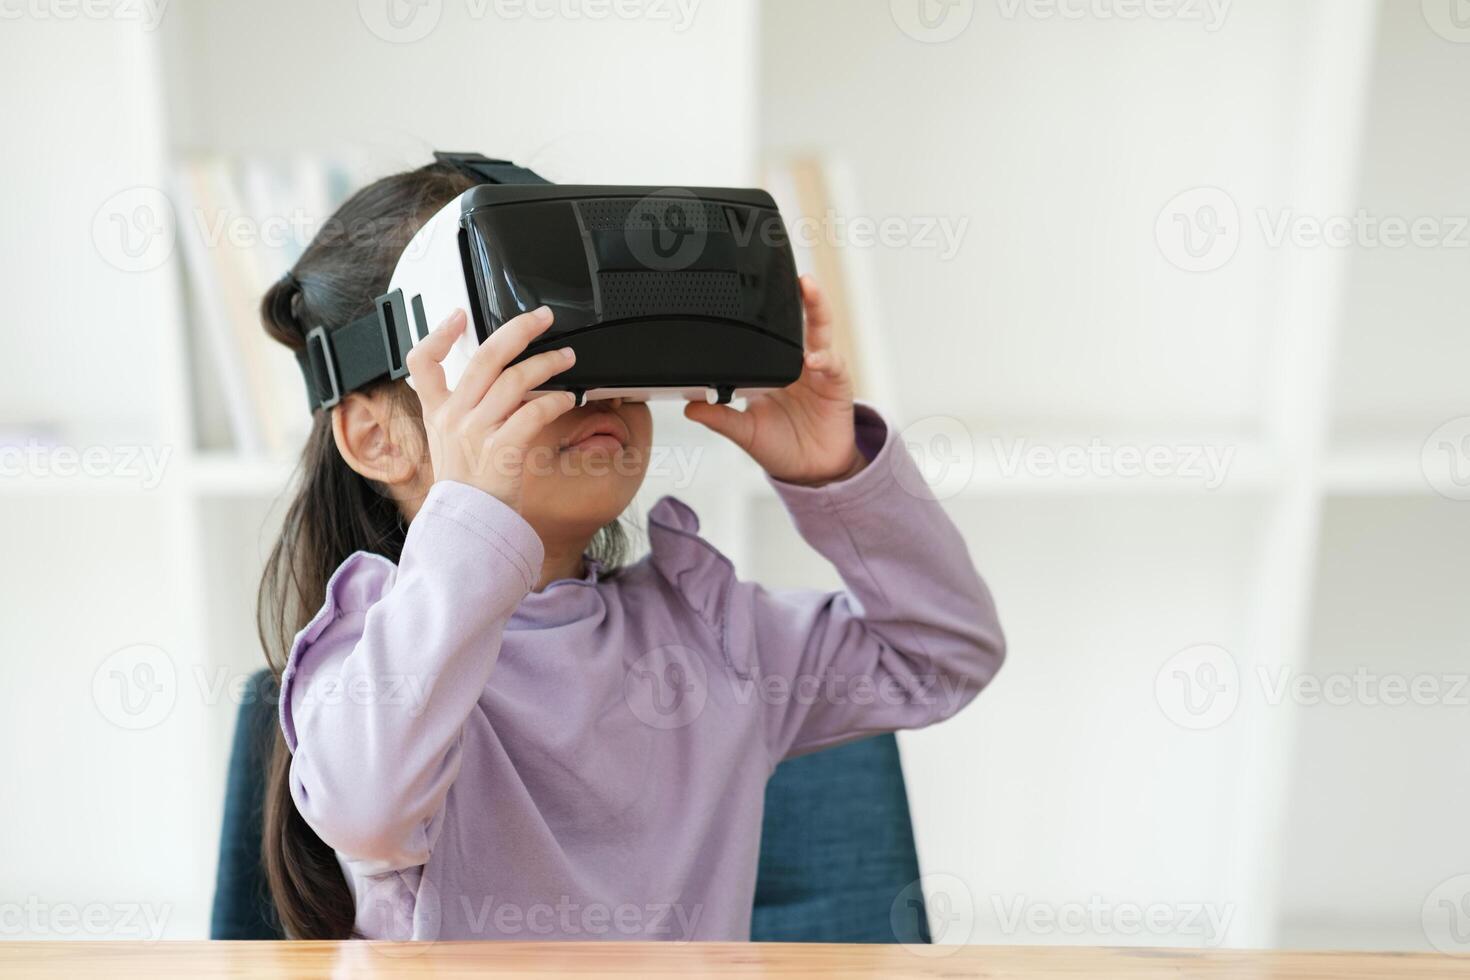 niño Encantado por virtual realidad experiencia foto